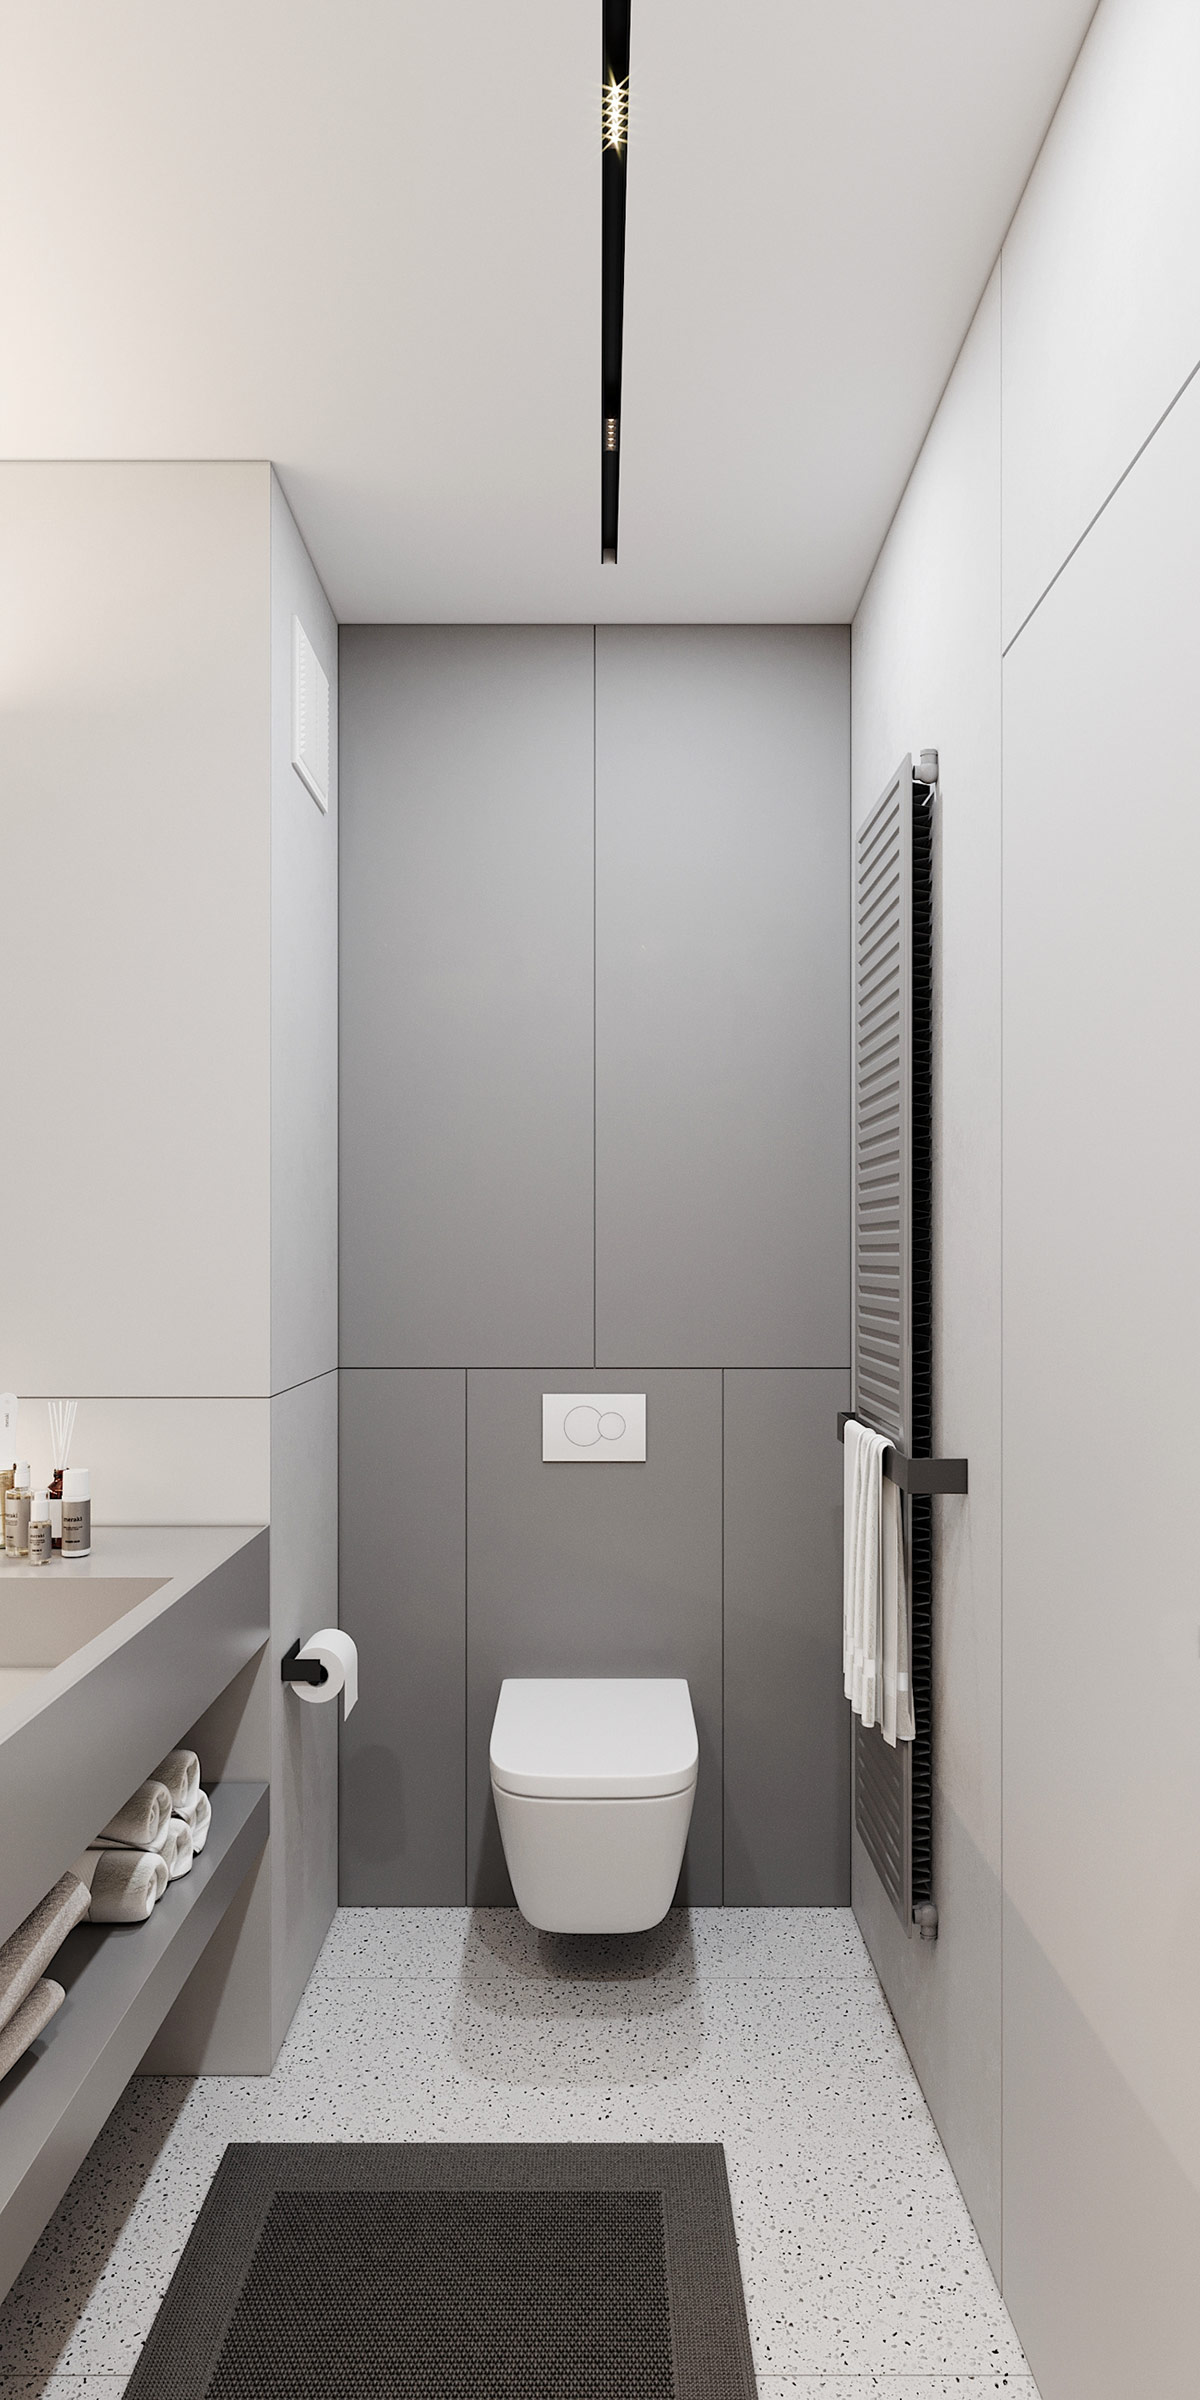 wall-hung-toilet-1-600x1200.jpg